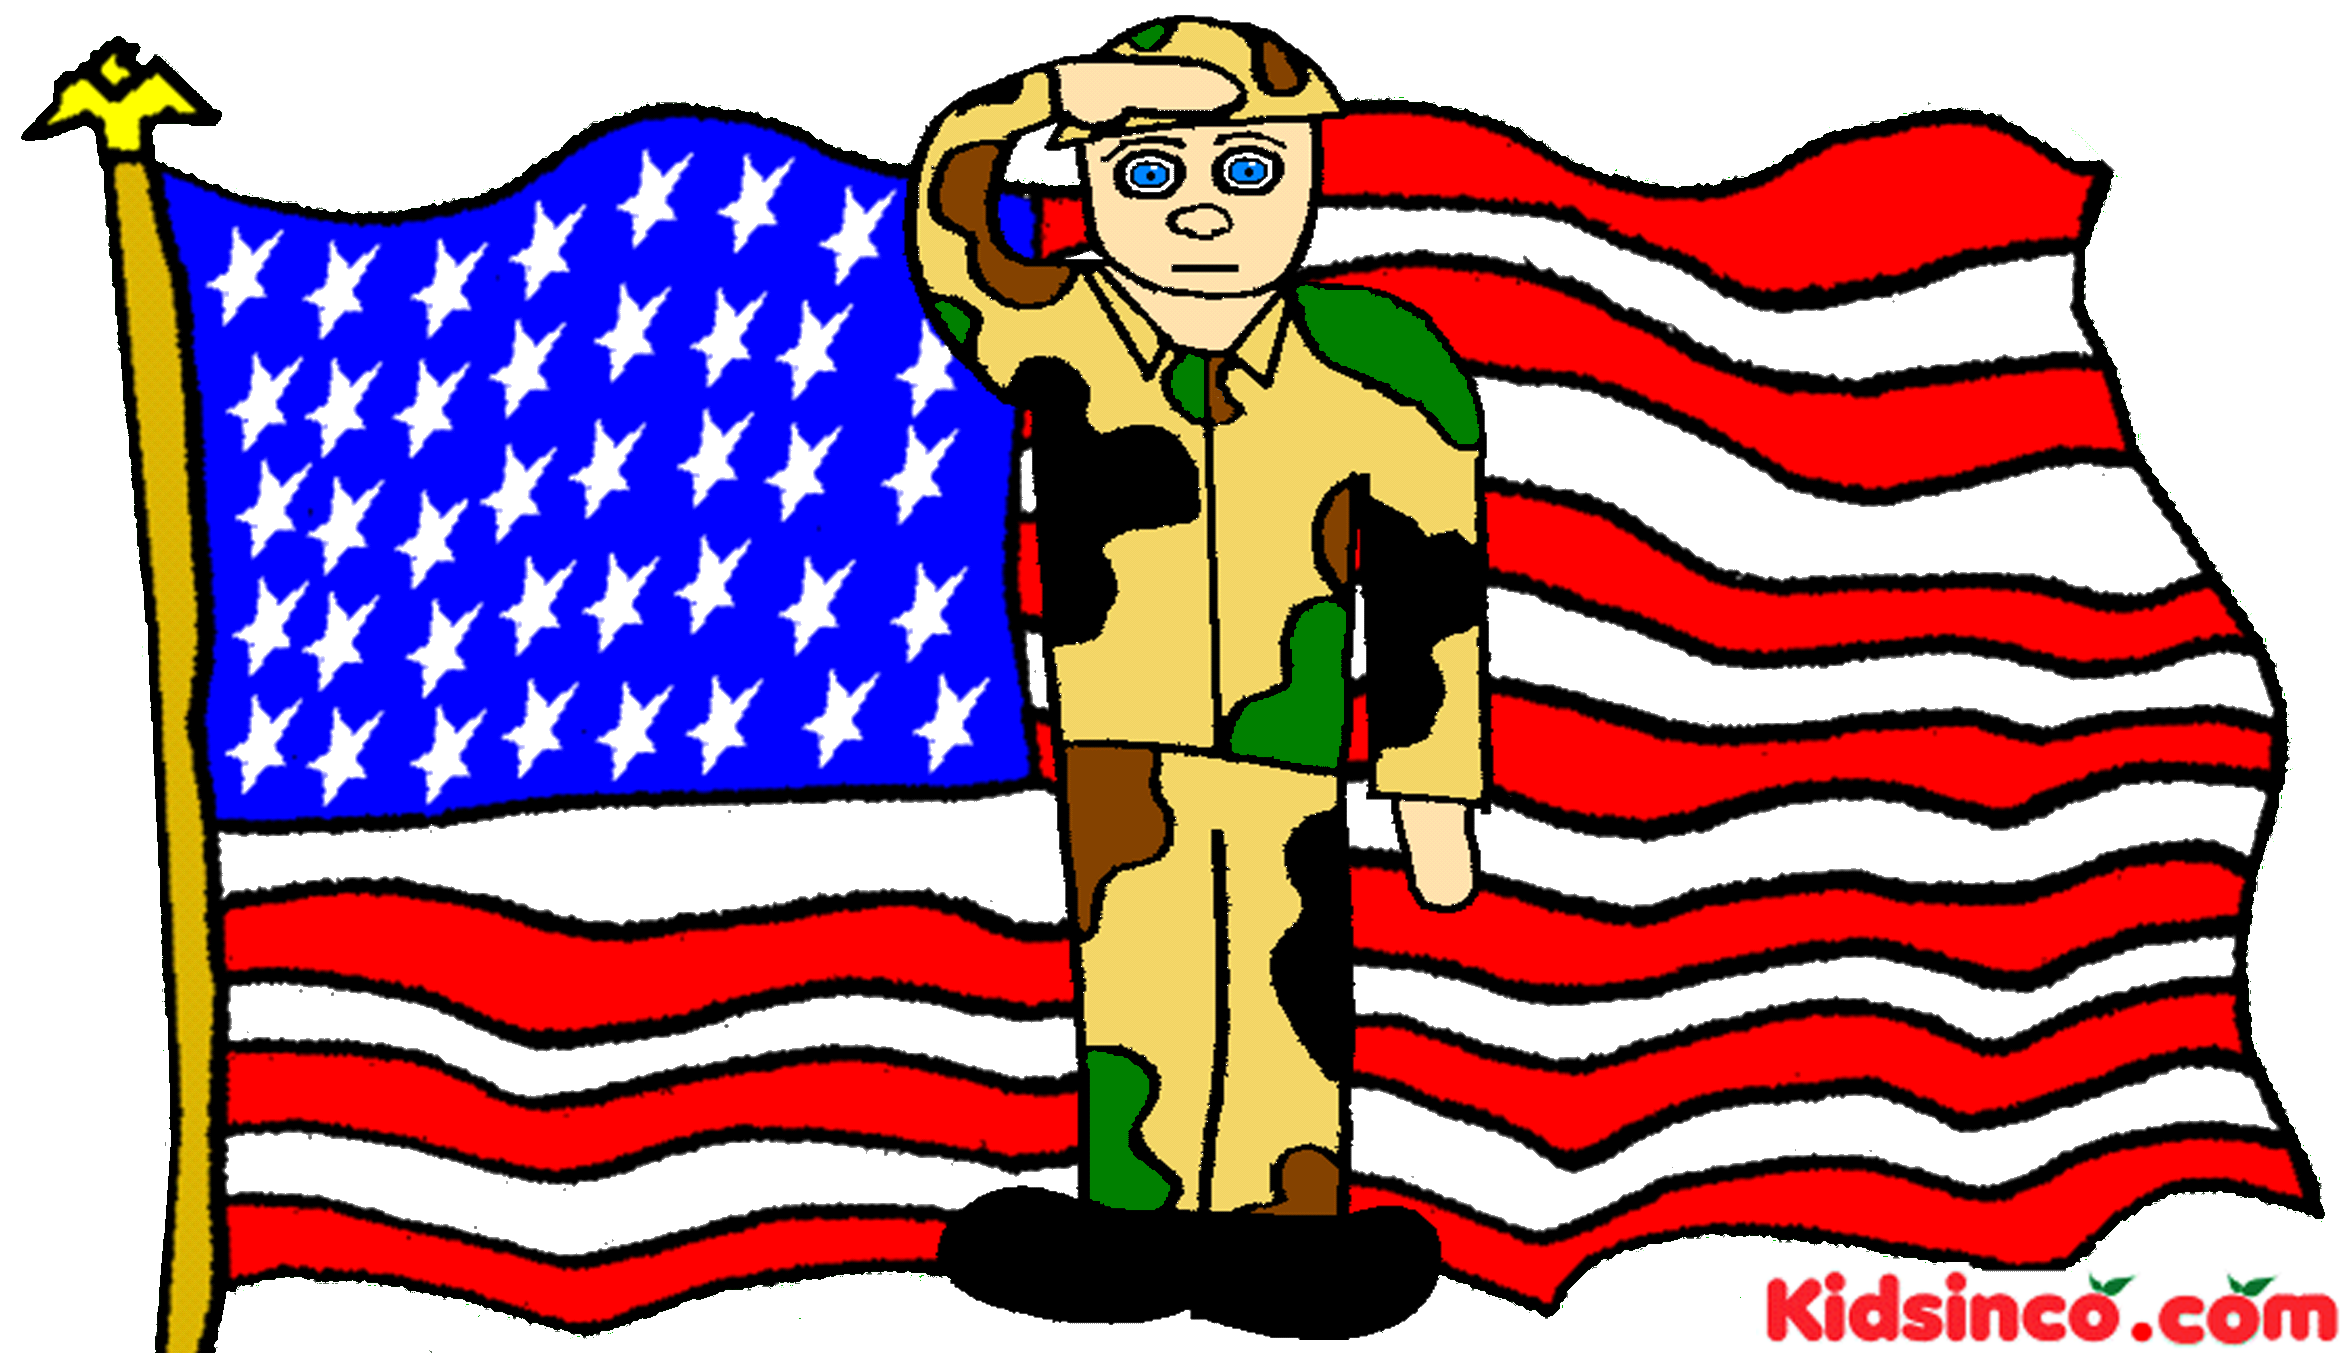 Veterans day clip art free do